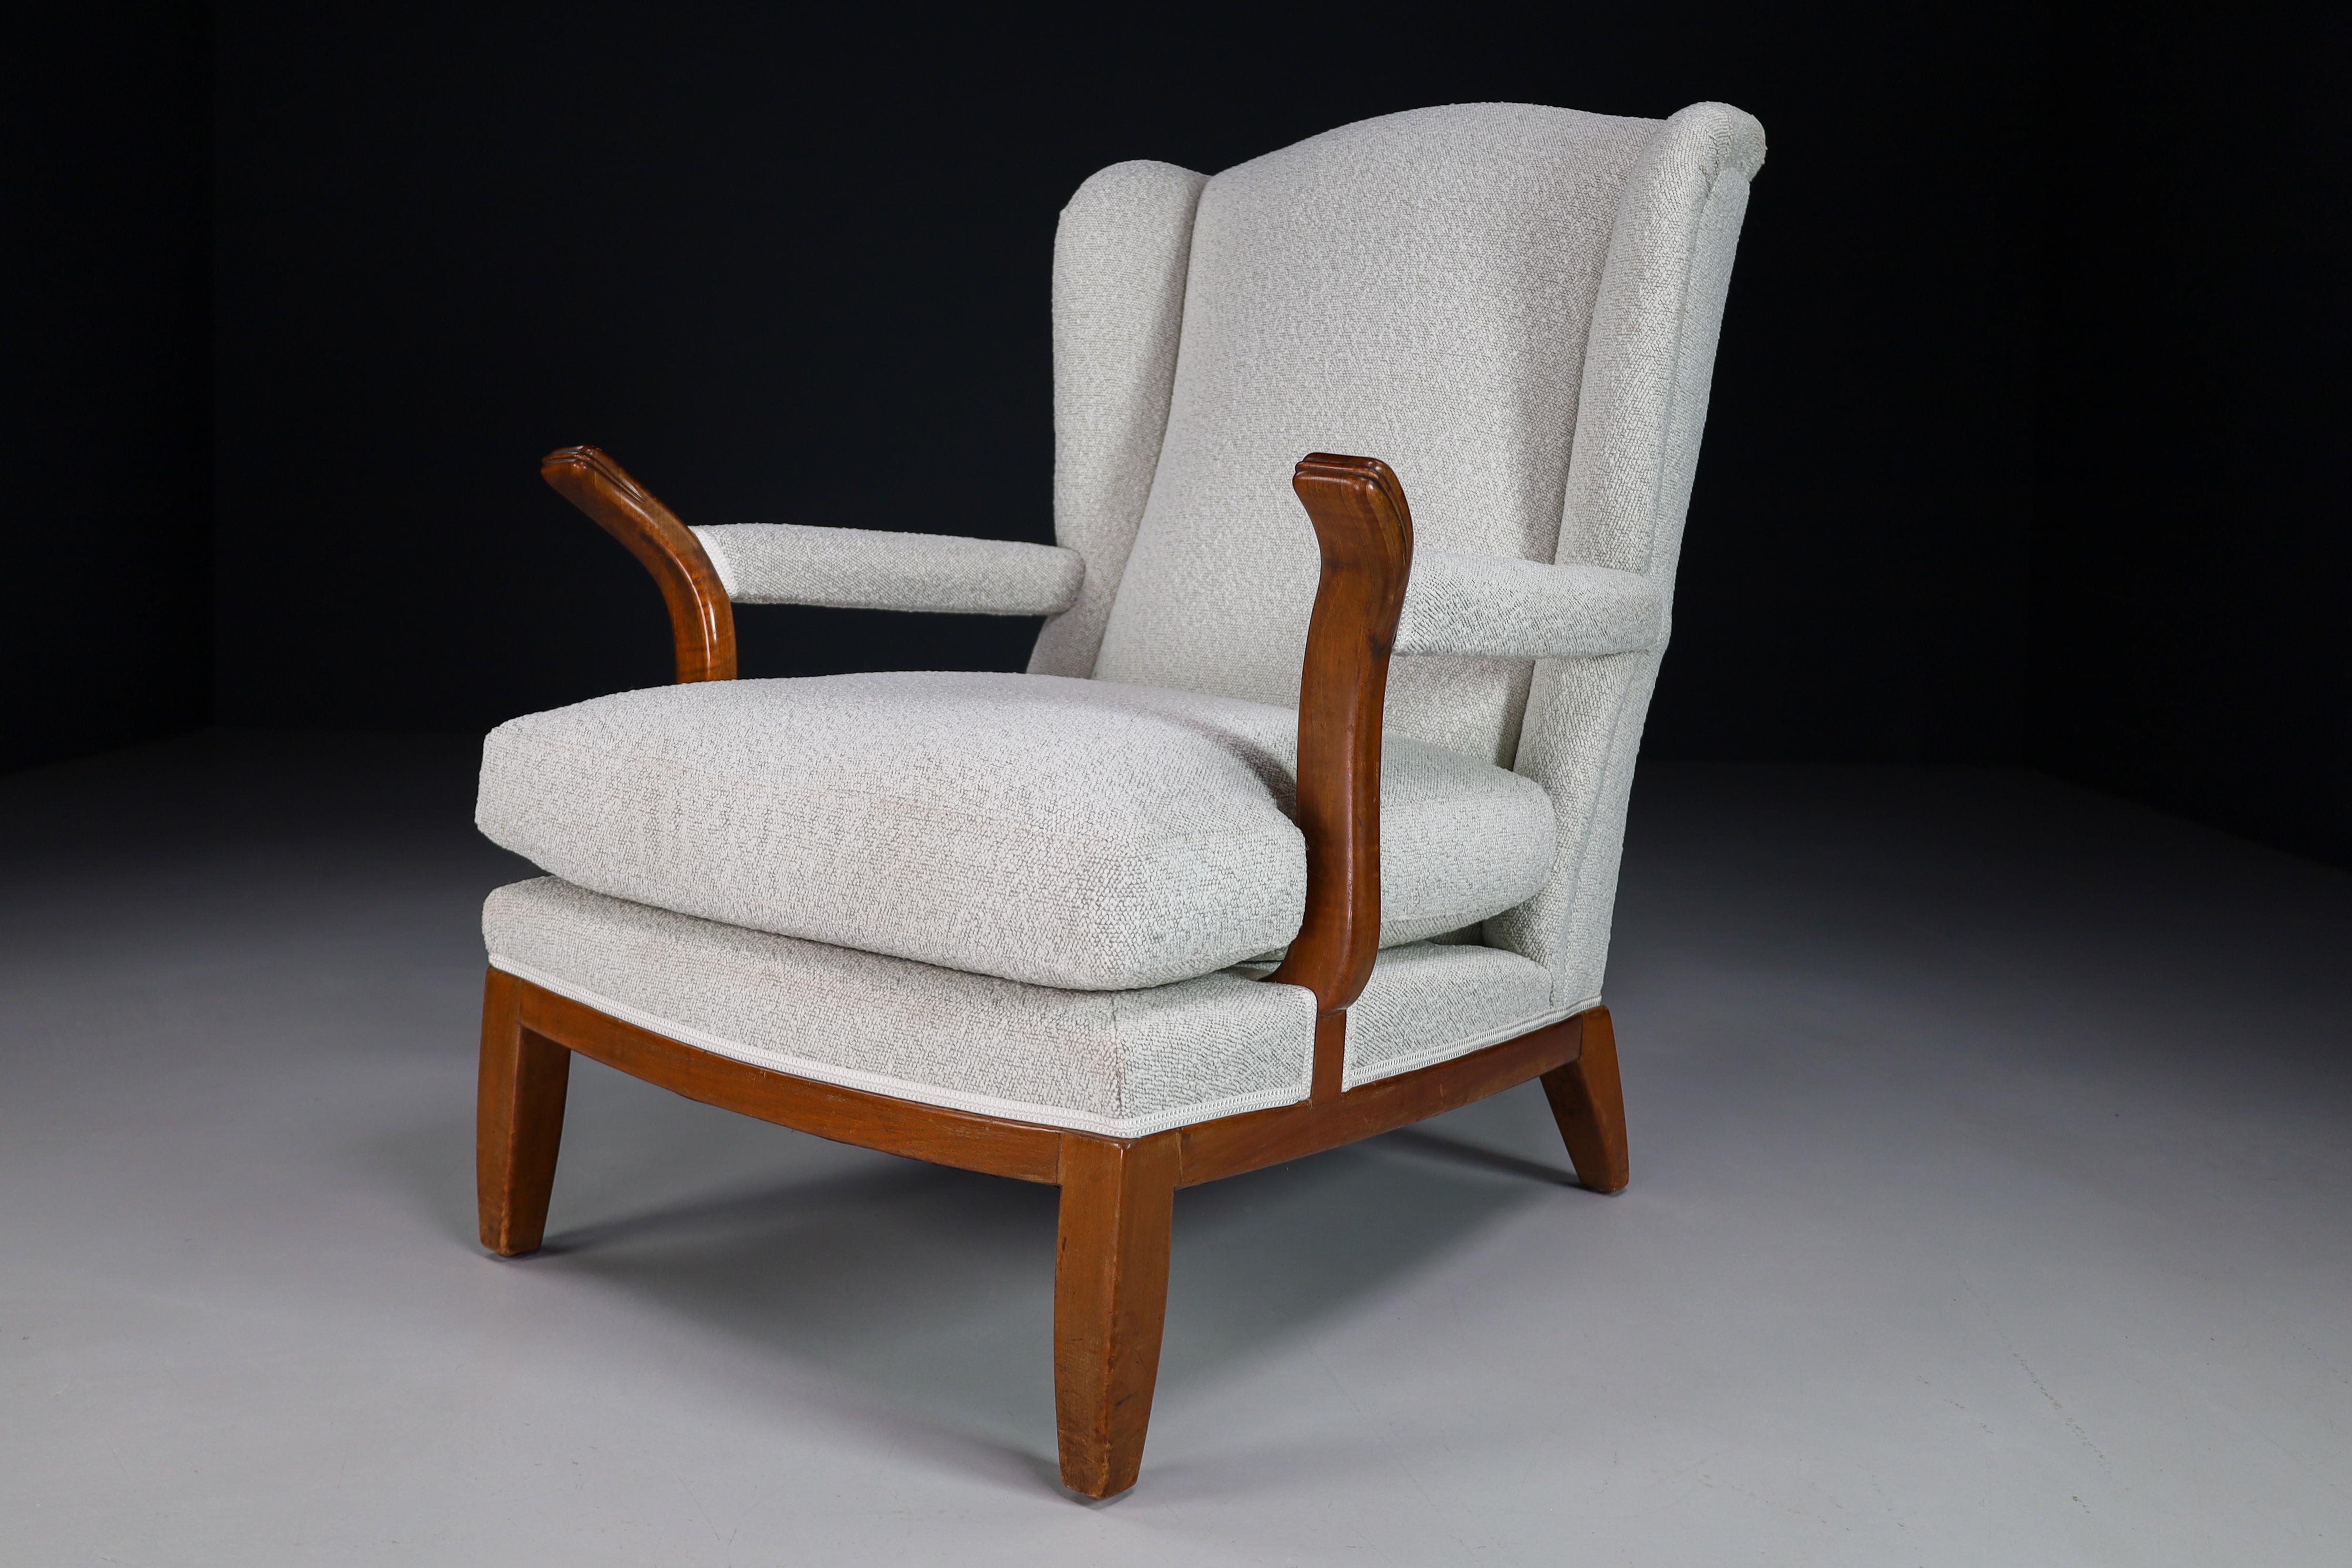 Chaise à oreilles de grande taille fabriquée et conçue en France dans les années 1930. Fabriquée en noyer, la chaise à oreilles vient d'être retapissée avec un tissu en laine Bouclé. Il est en parfait état, petite patine sur les parties en bois. Ce